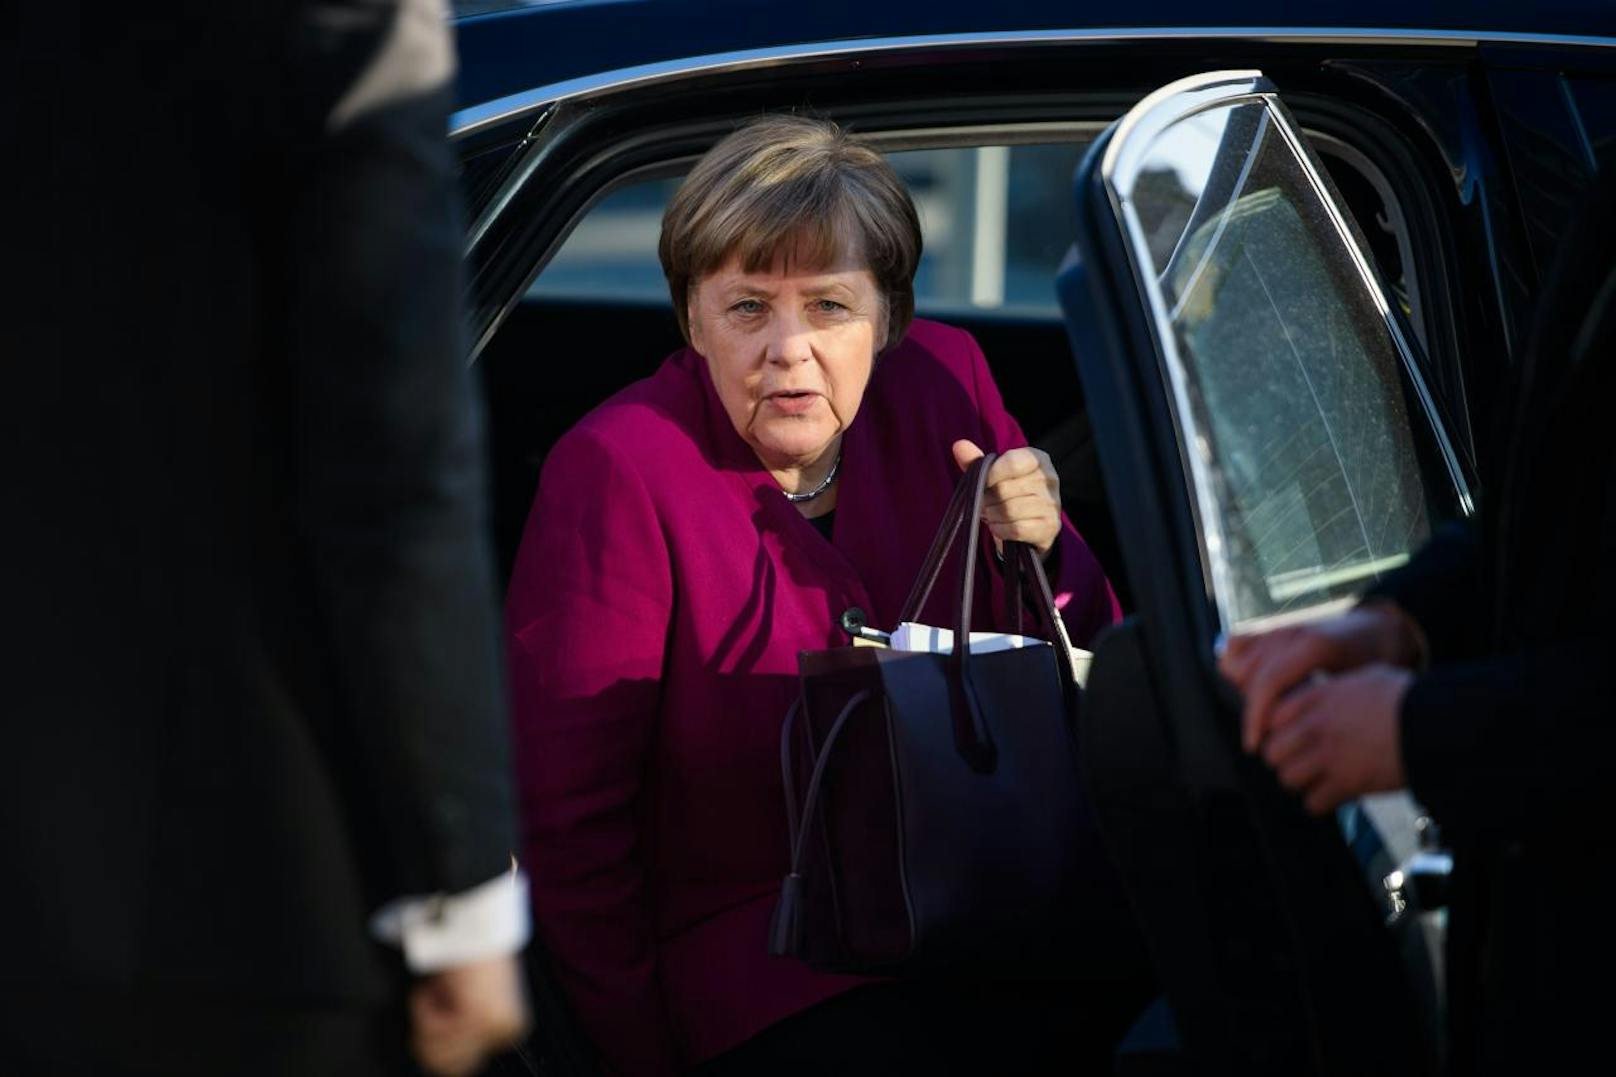 Kanzlerin Angela Merkel bei ihrer Ankunft in der CDU-Parteizentrale am Mittwoch.